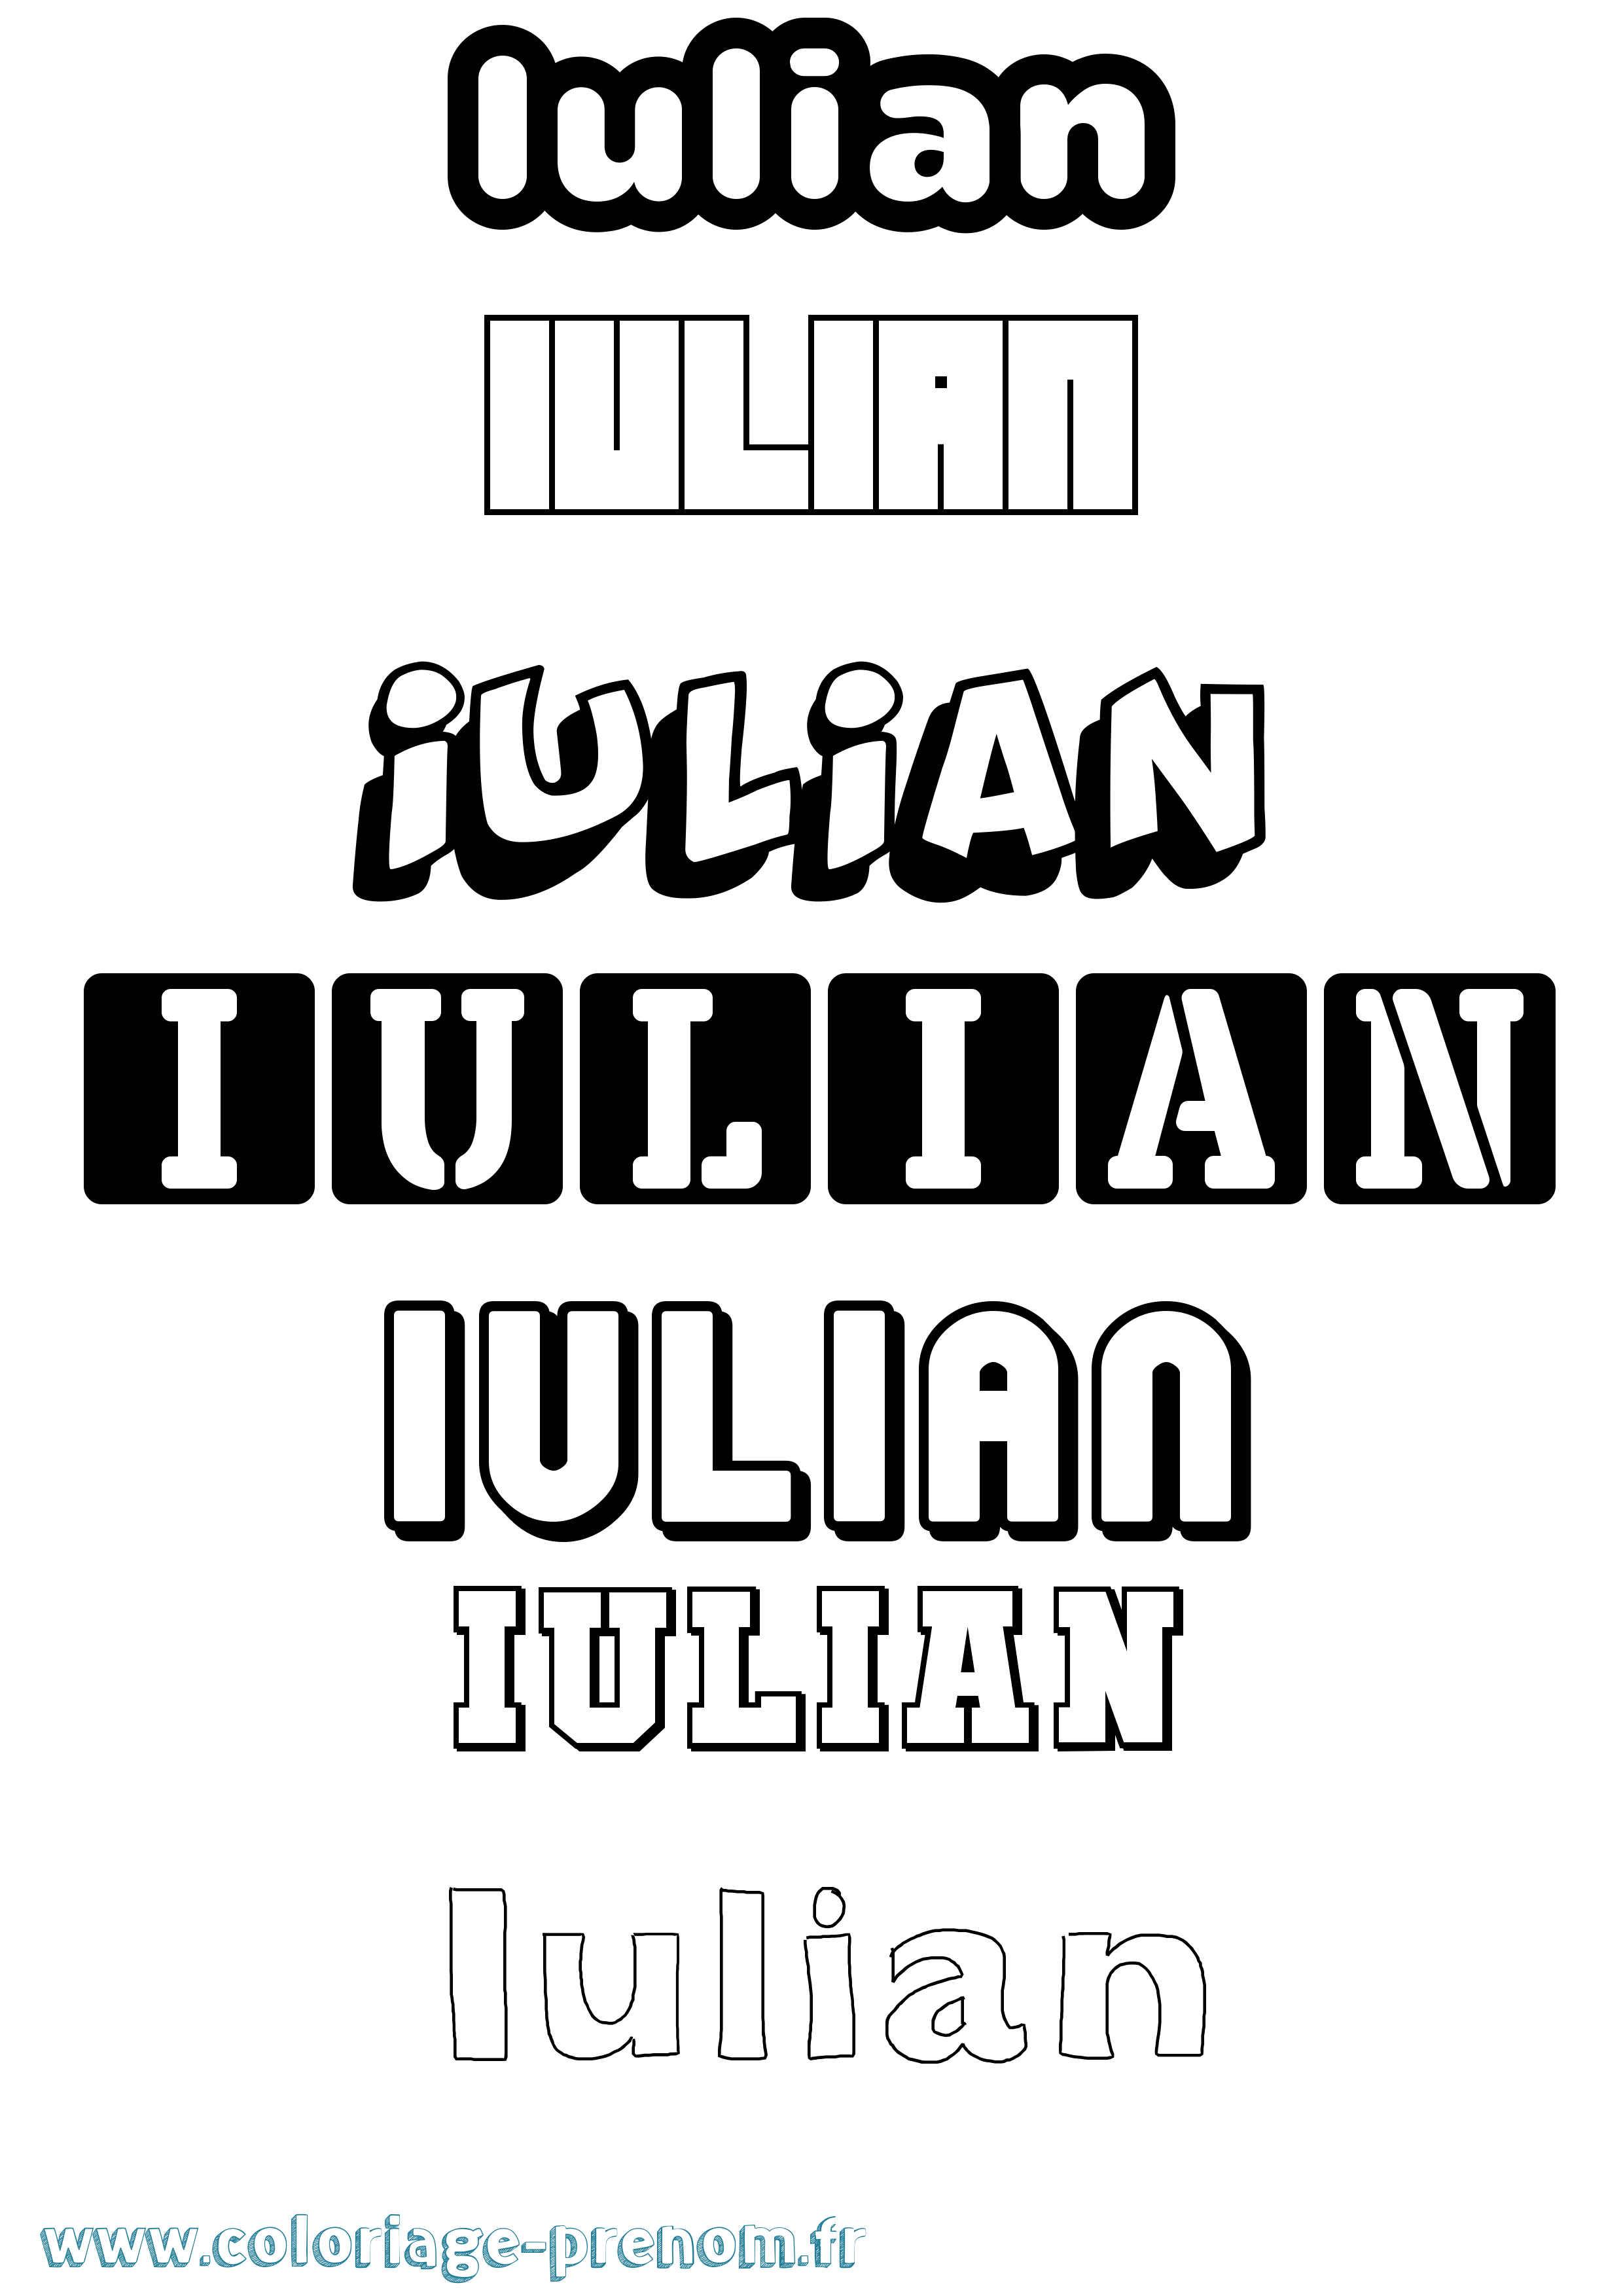 Coloriage prénom Iulian Simple